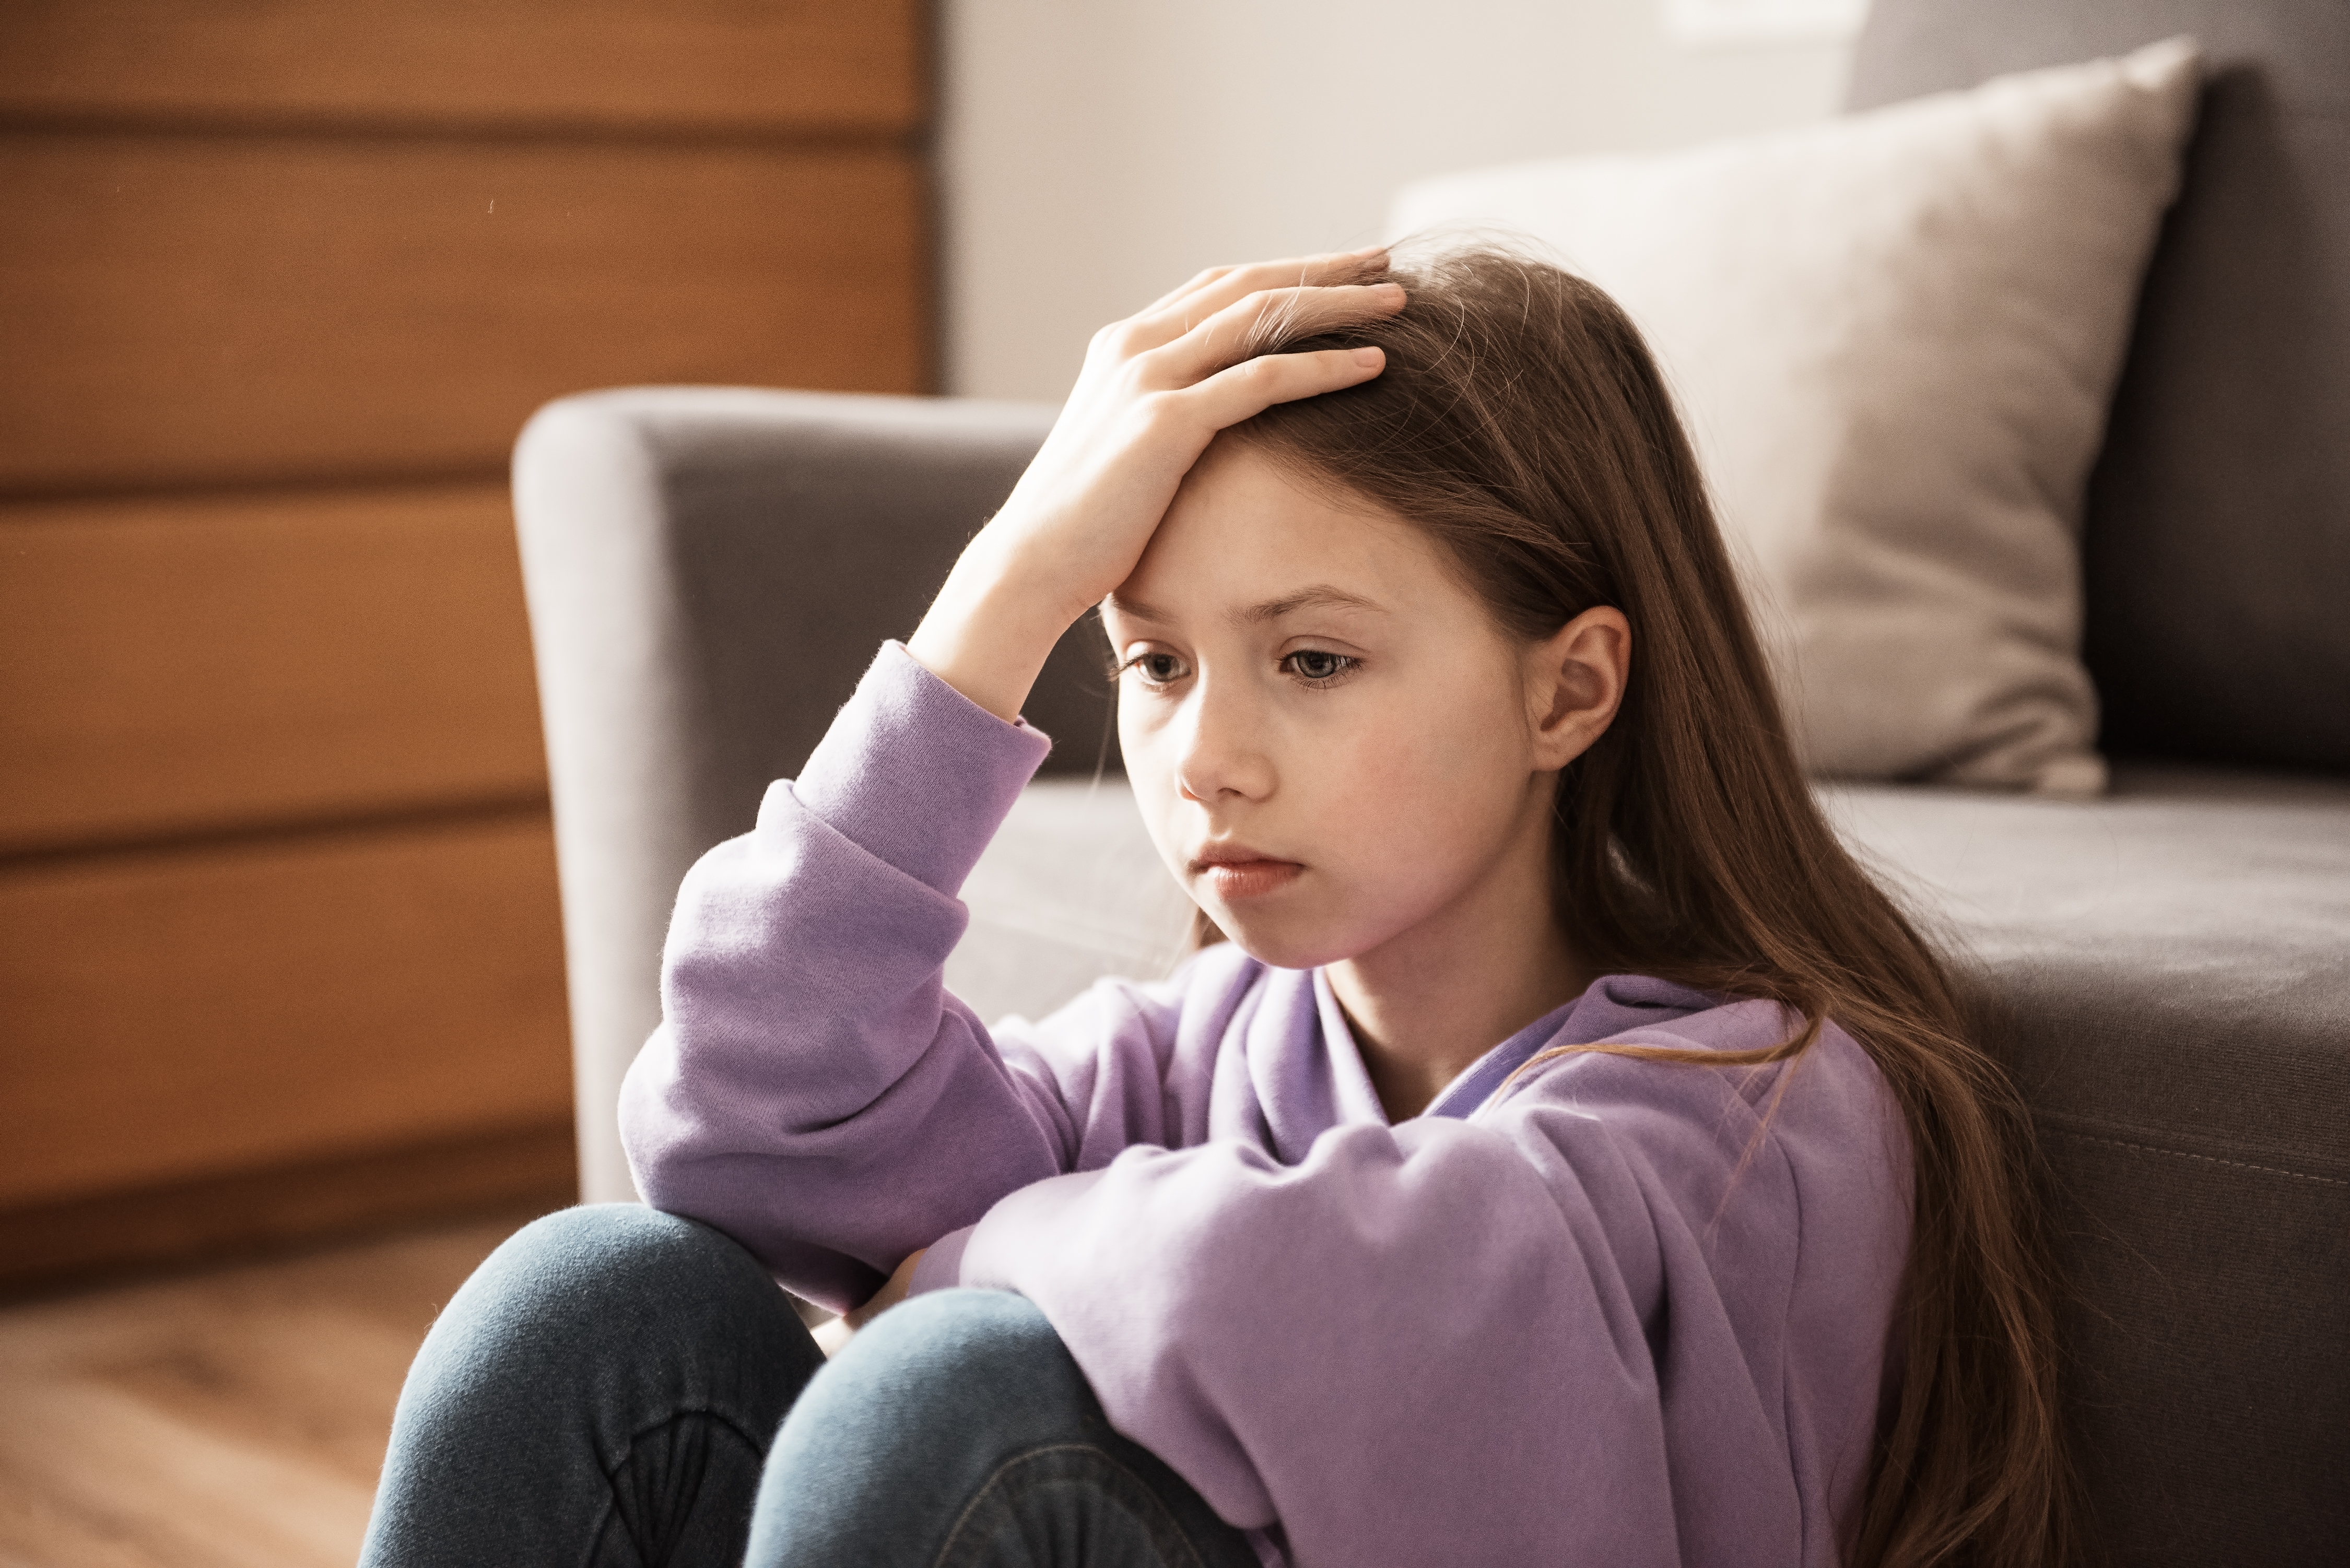 Une adolescente déprimée est photographiée assise à l'intérieur | Source : Shutterstock